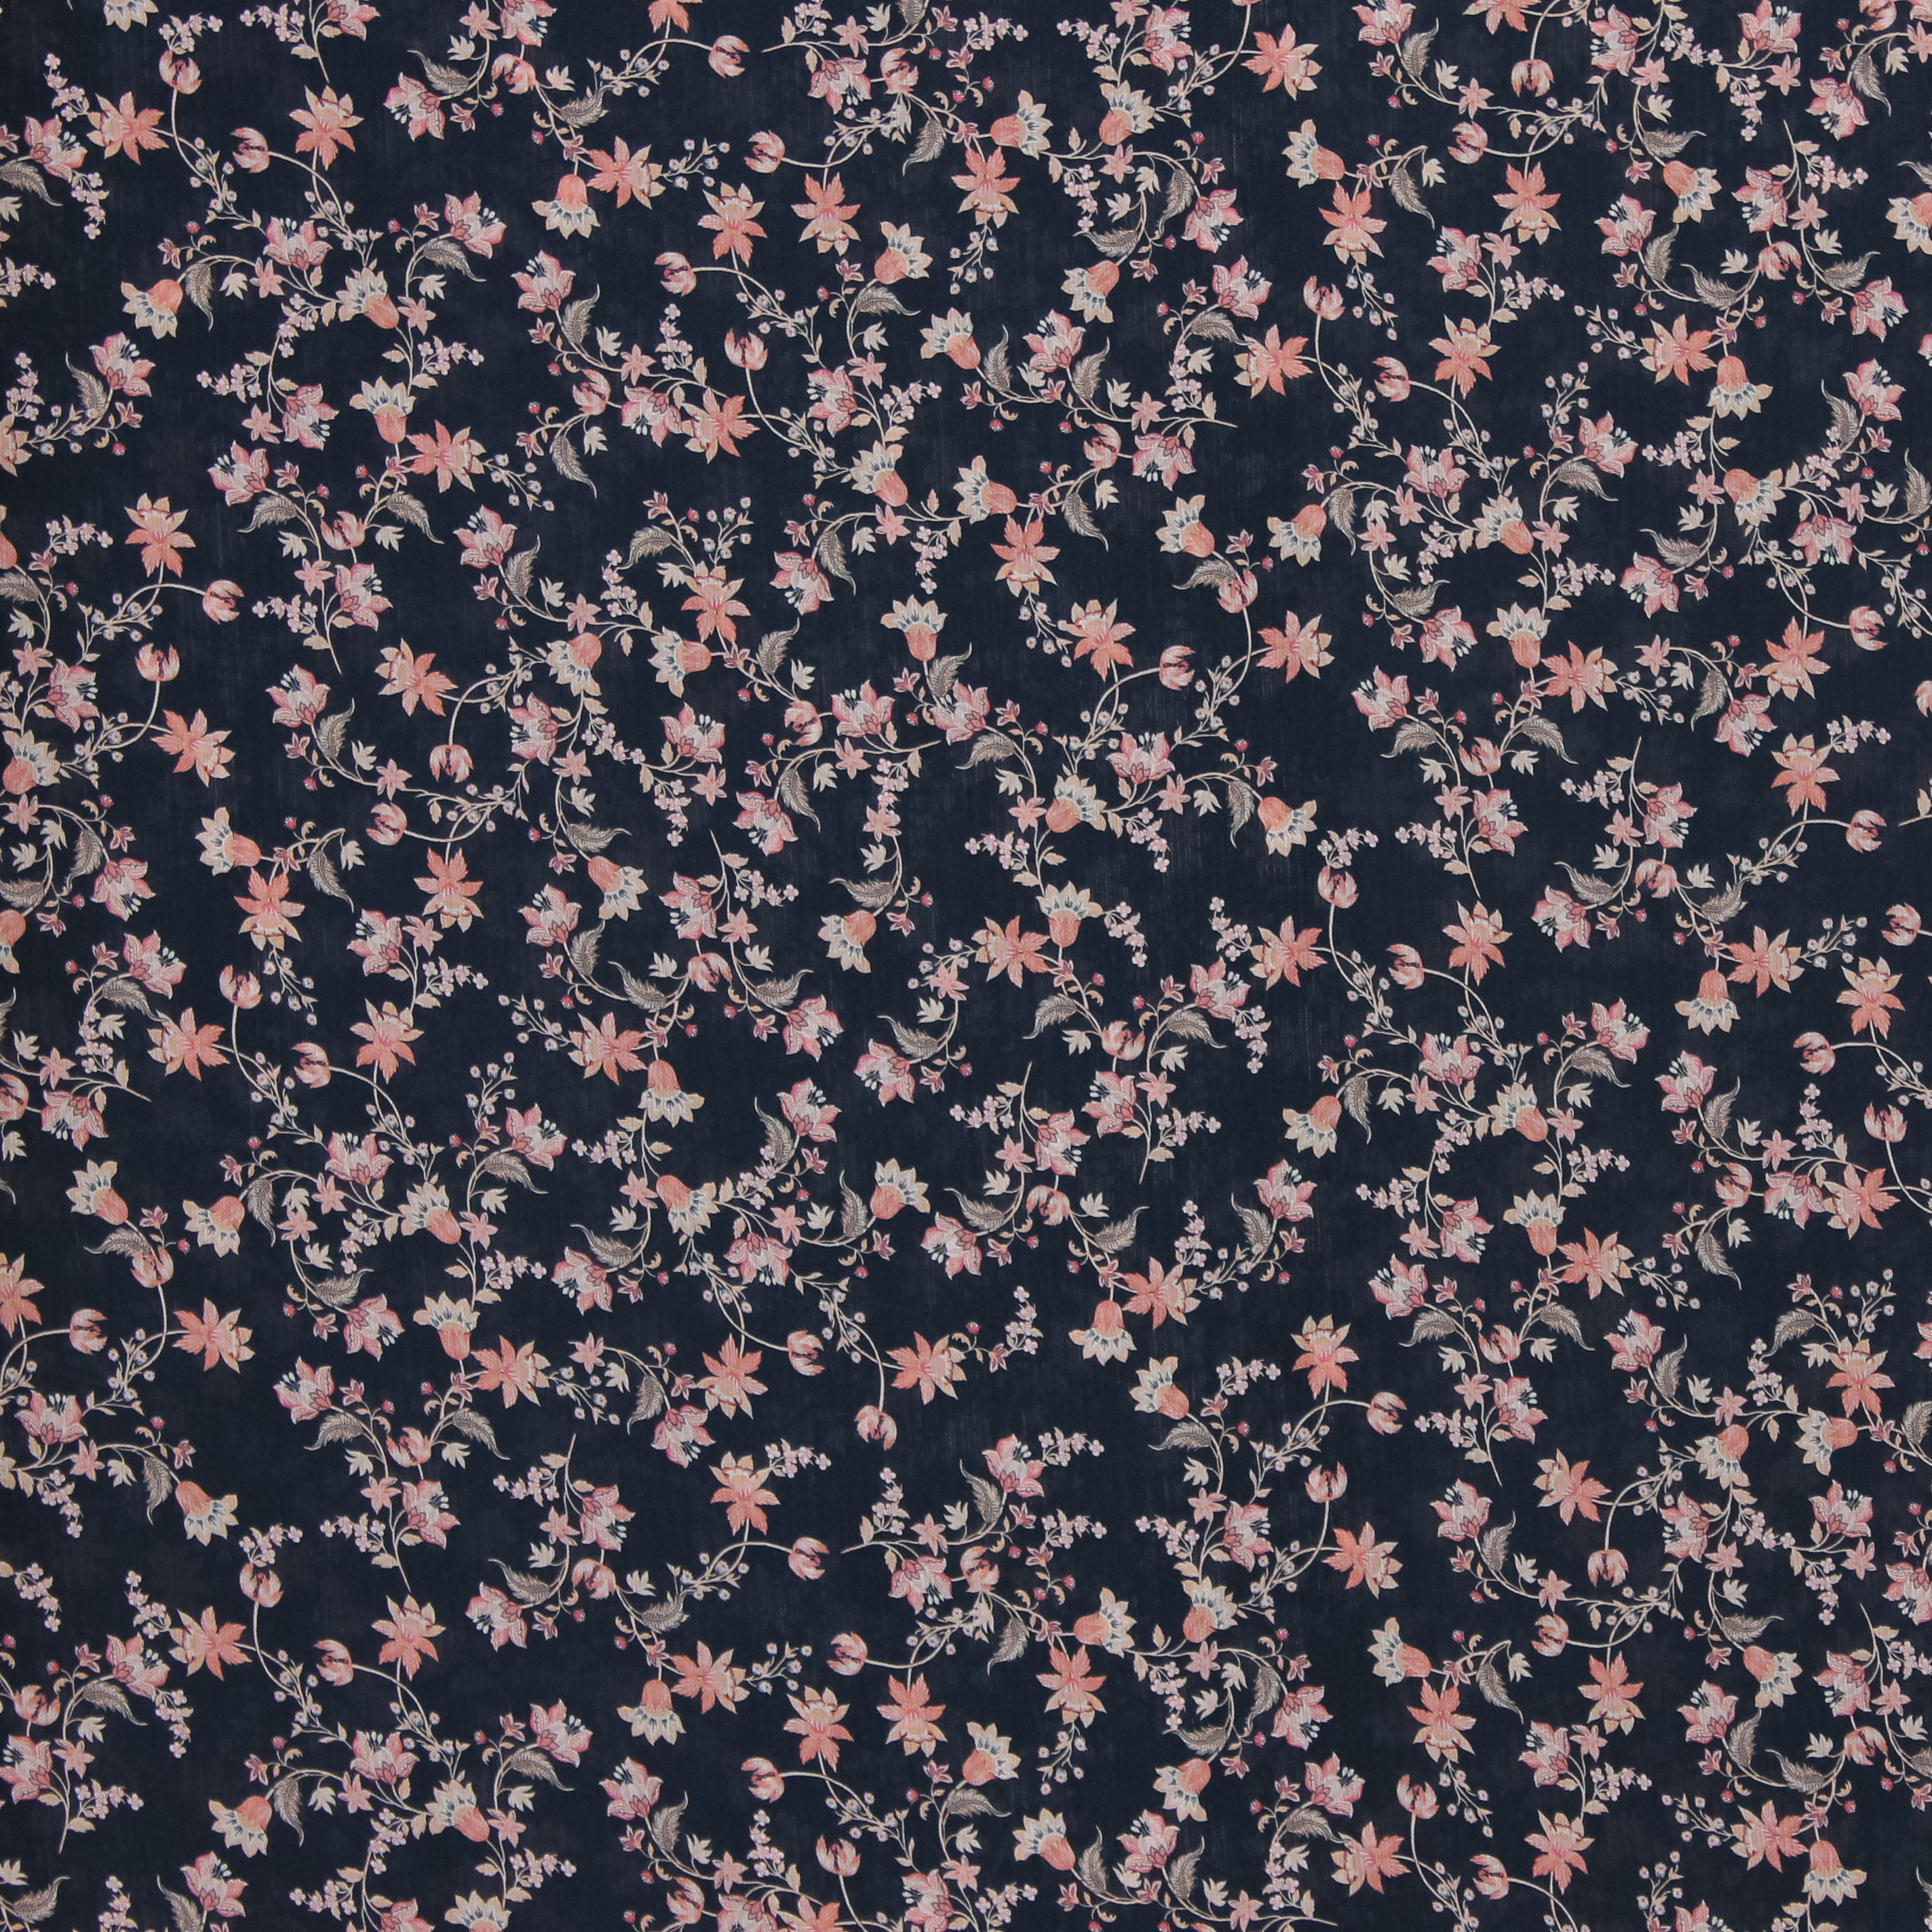 Doorschijnende zwarte polyester voile met roze bloemen